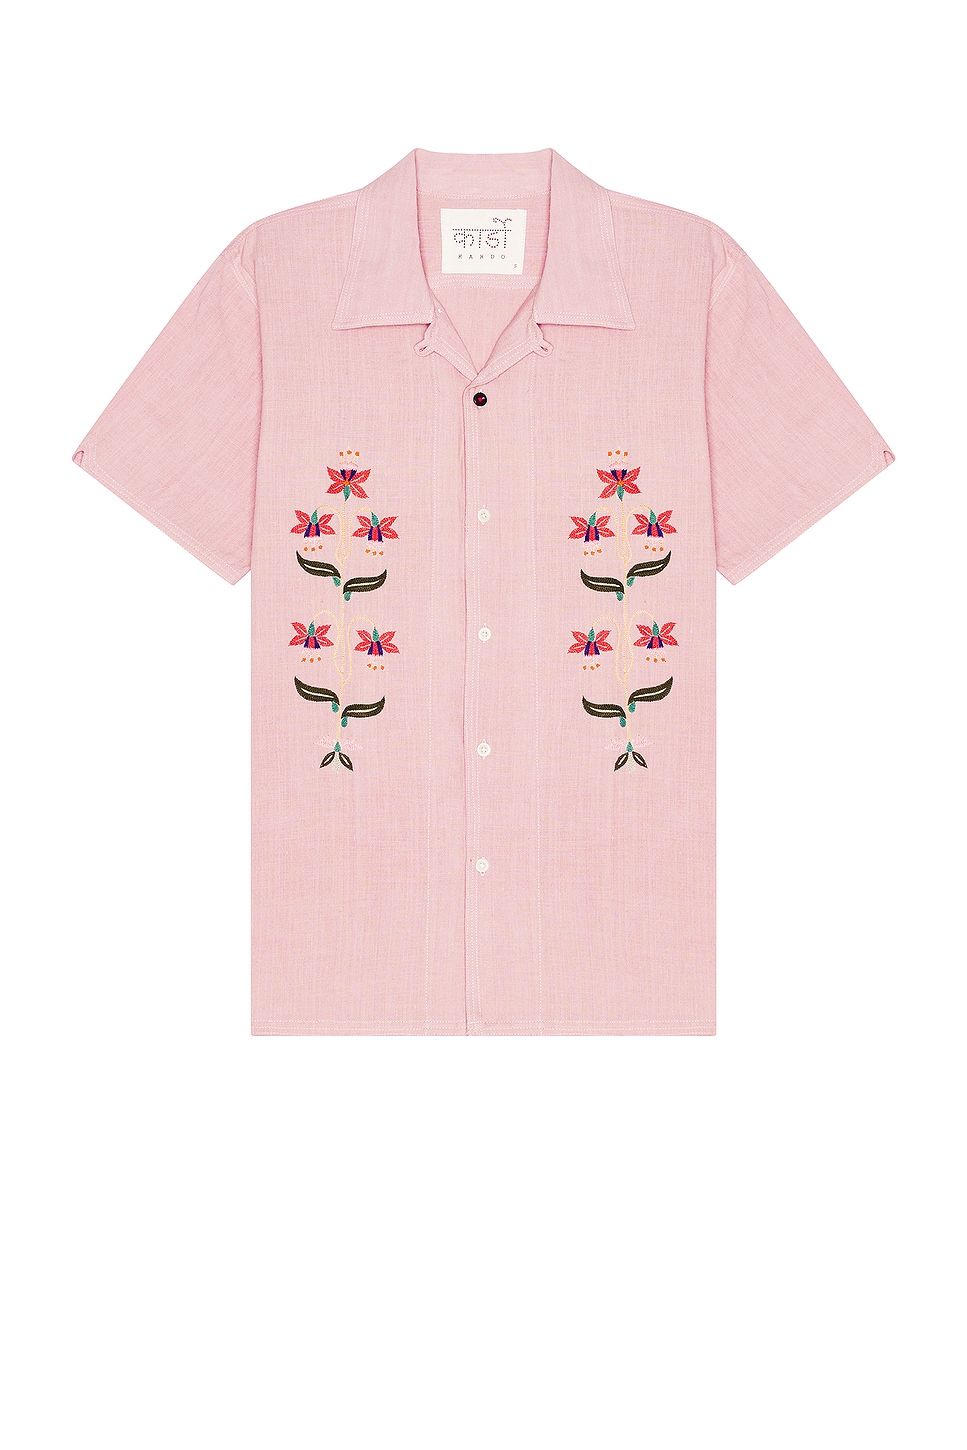 Image 1 of Kardo Chintan Shirt in Emb14 Fondant Pink